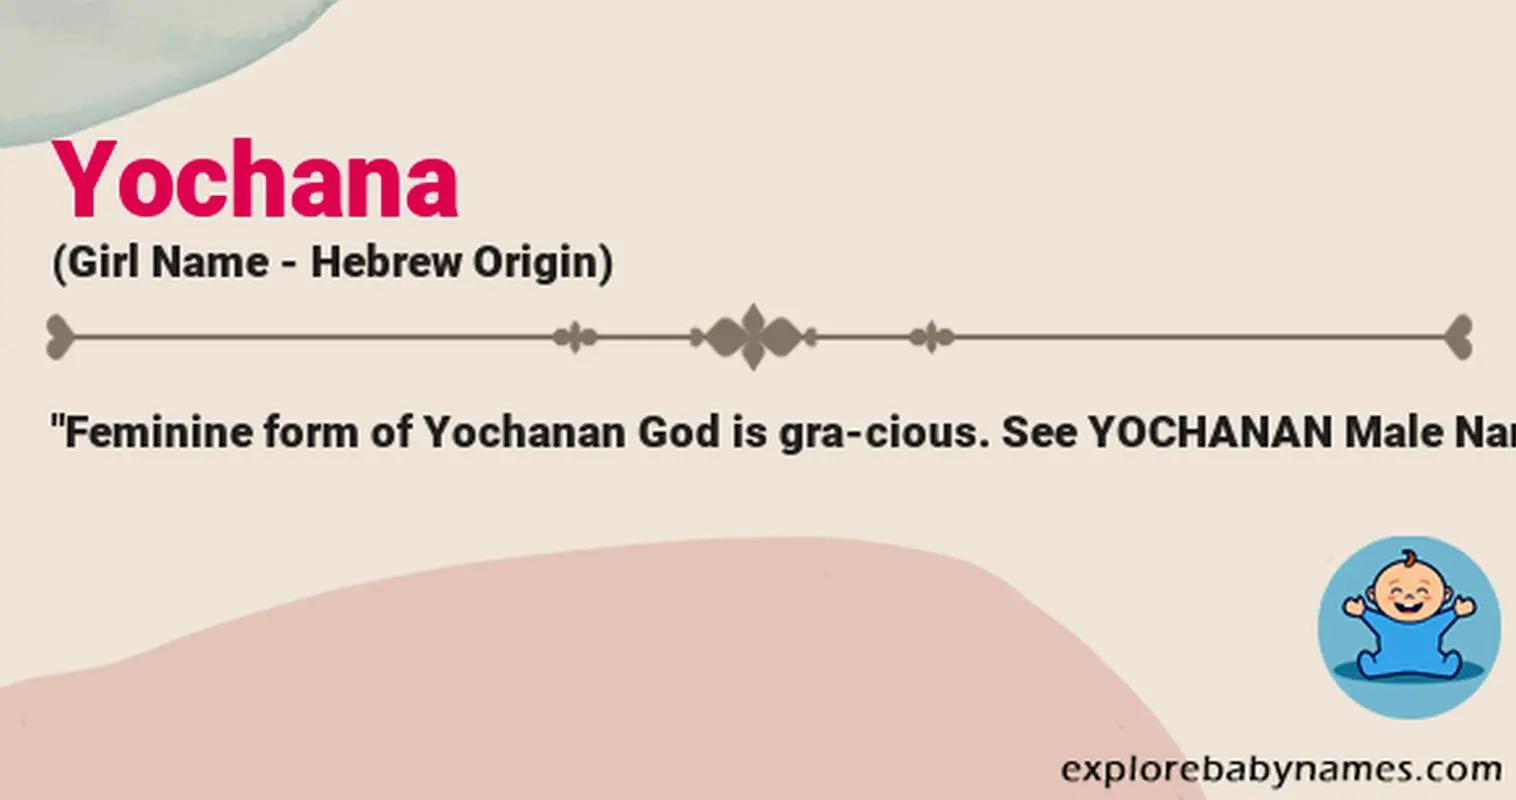 Meaning of Yochana